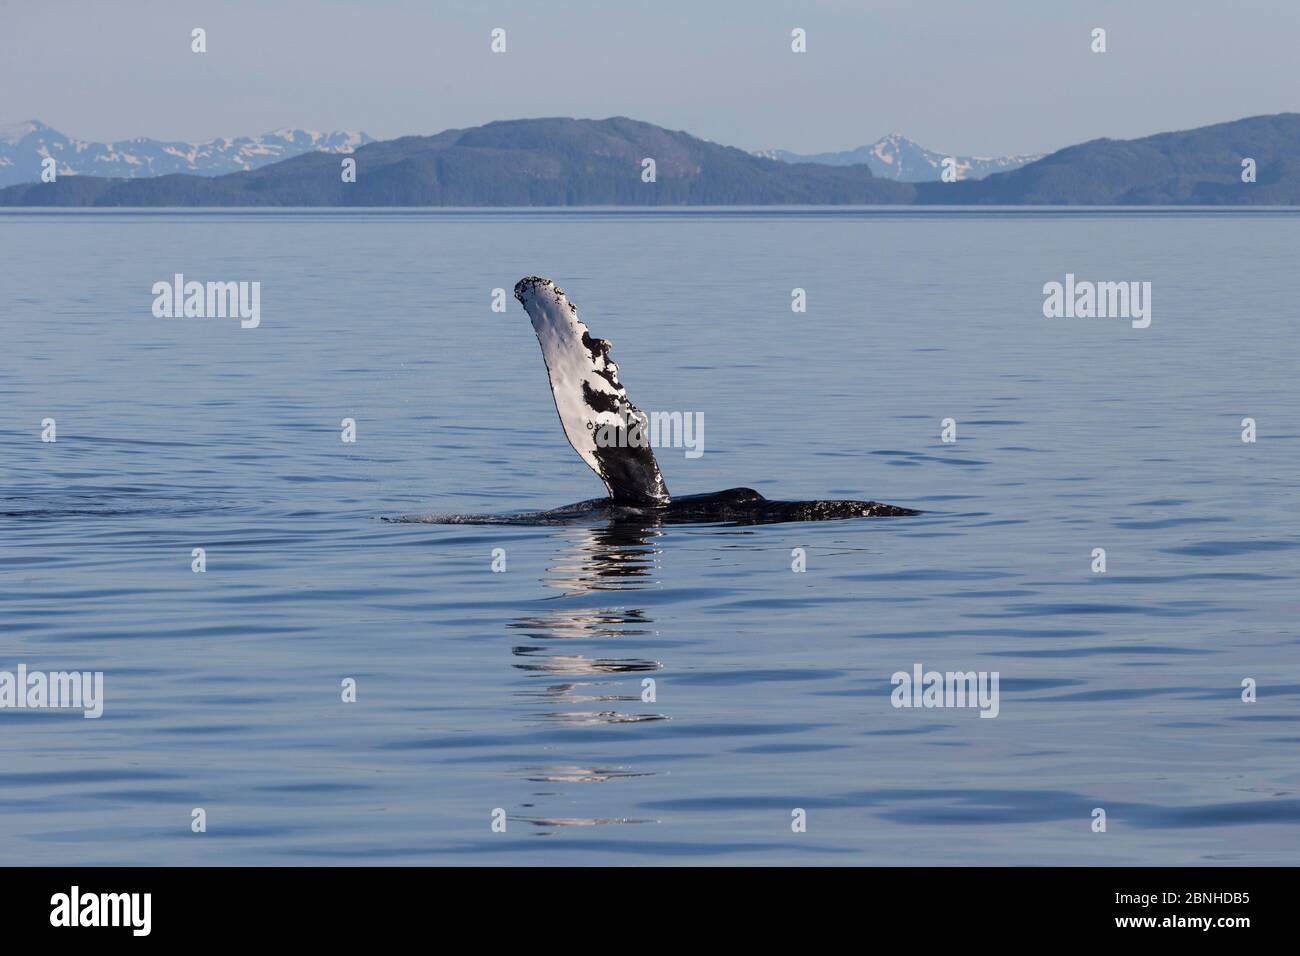 Baleine à bosse (Megaptera novaeangliae) orvante la nageoire pectorale dans l'air, baie Prince William, Alaska, juillet. Banque D'Images